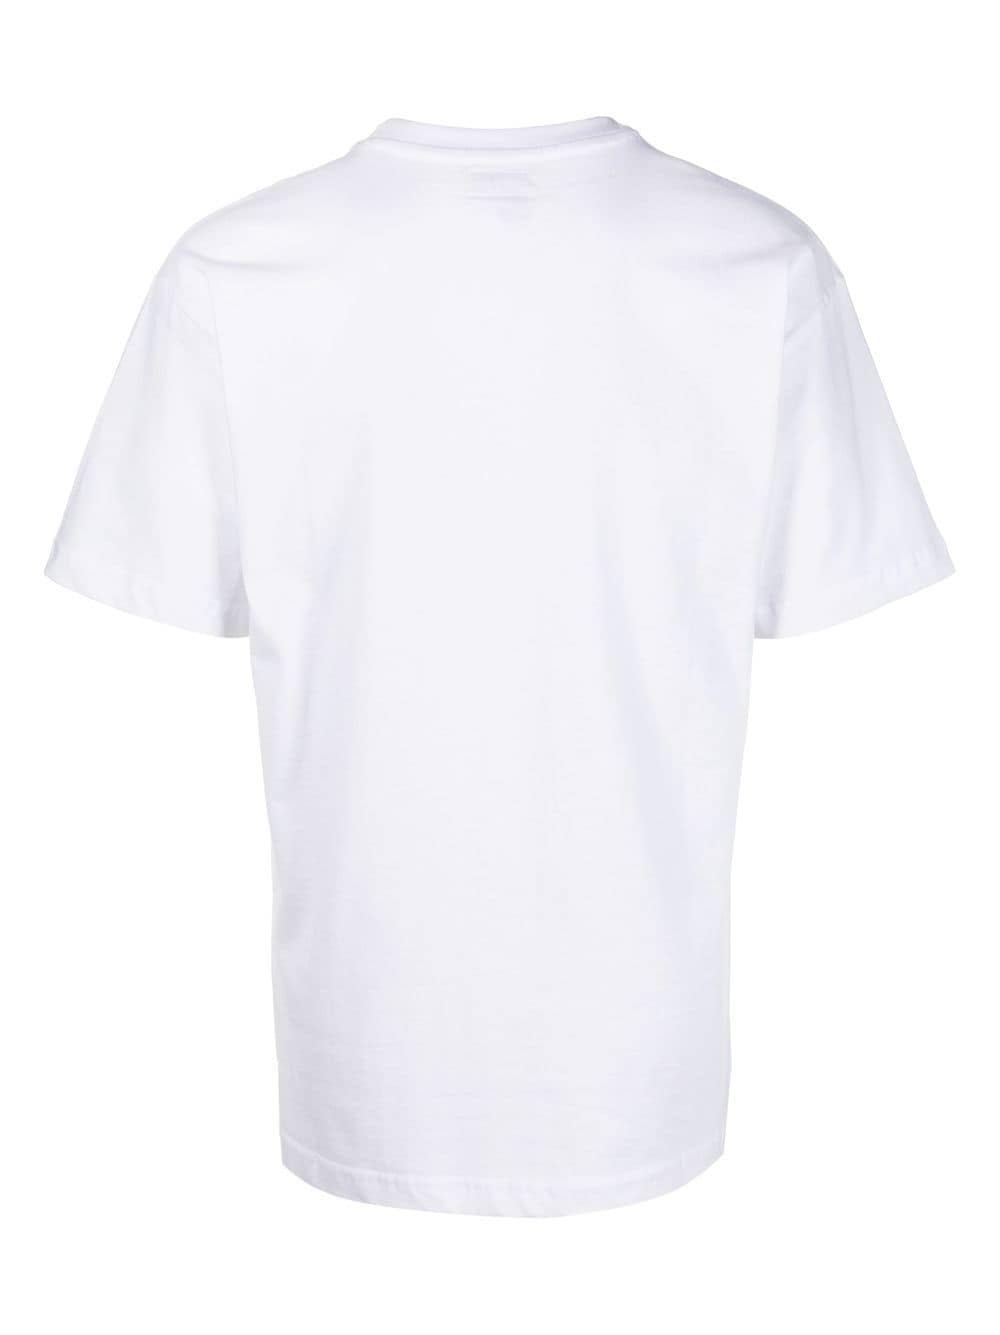 MARKET T-shirt met print - Wit